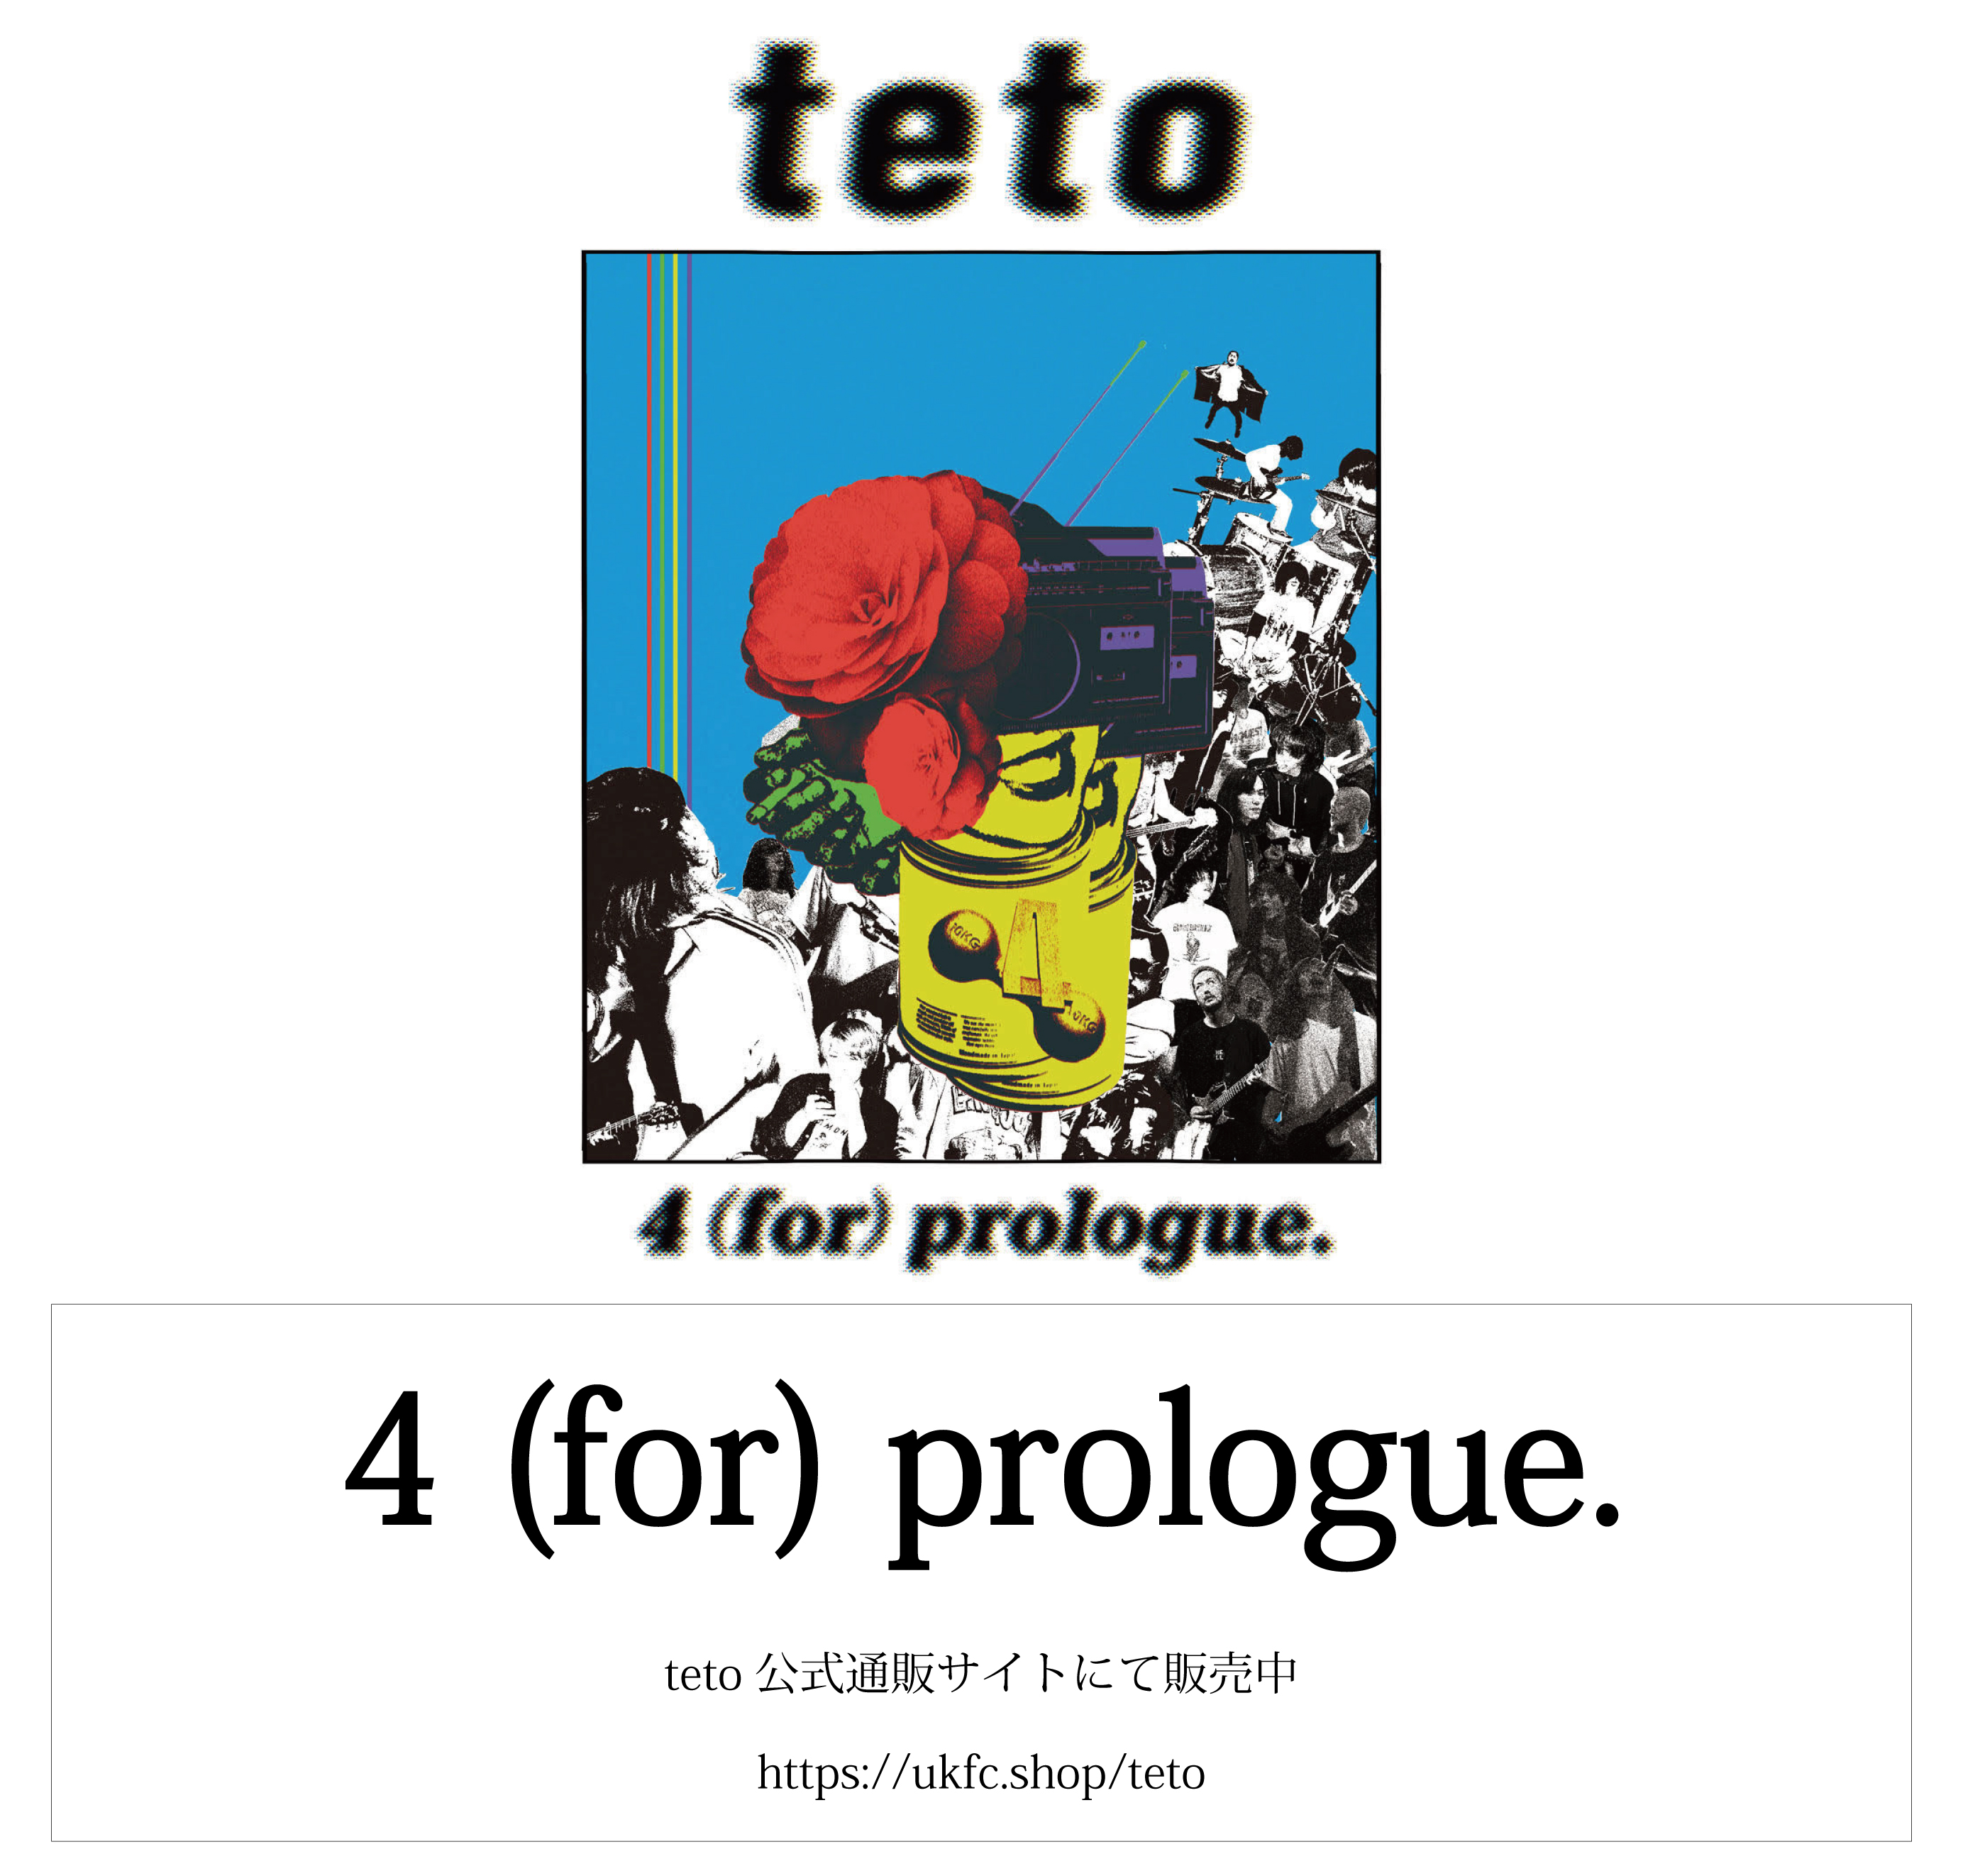 Teto Official Web Site